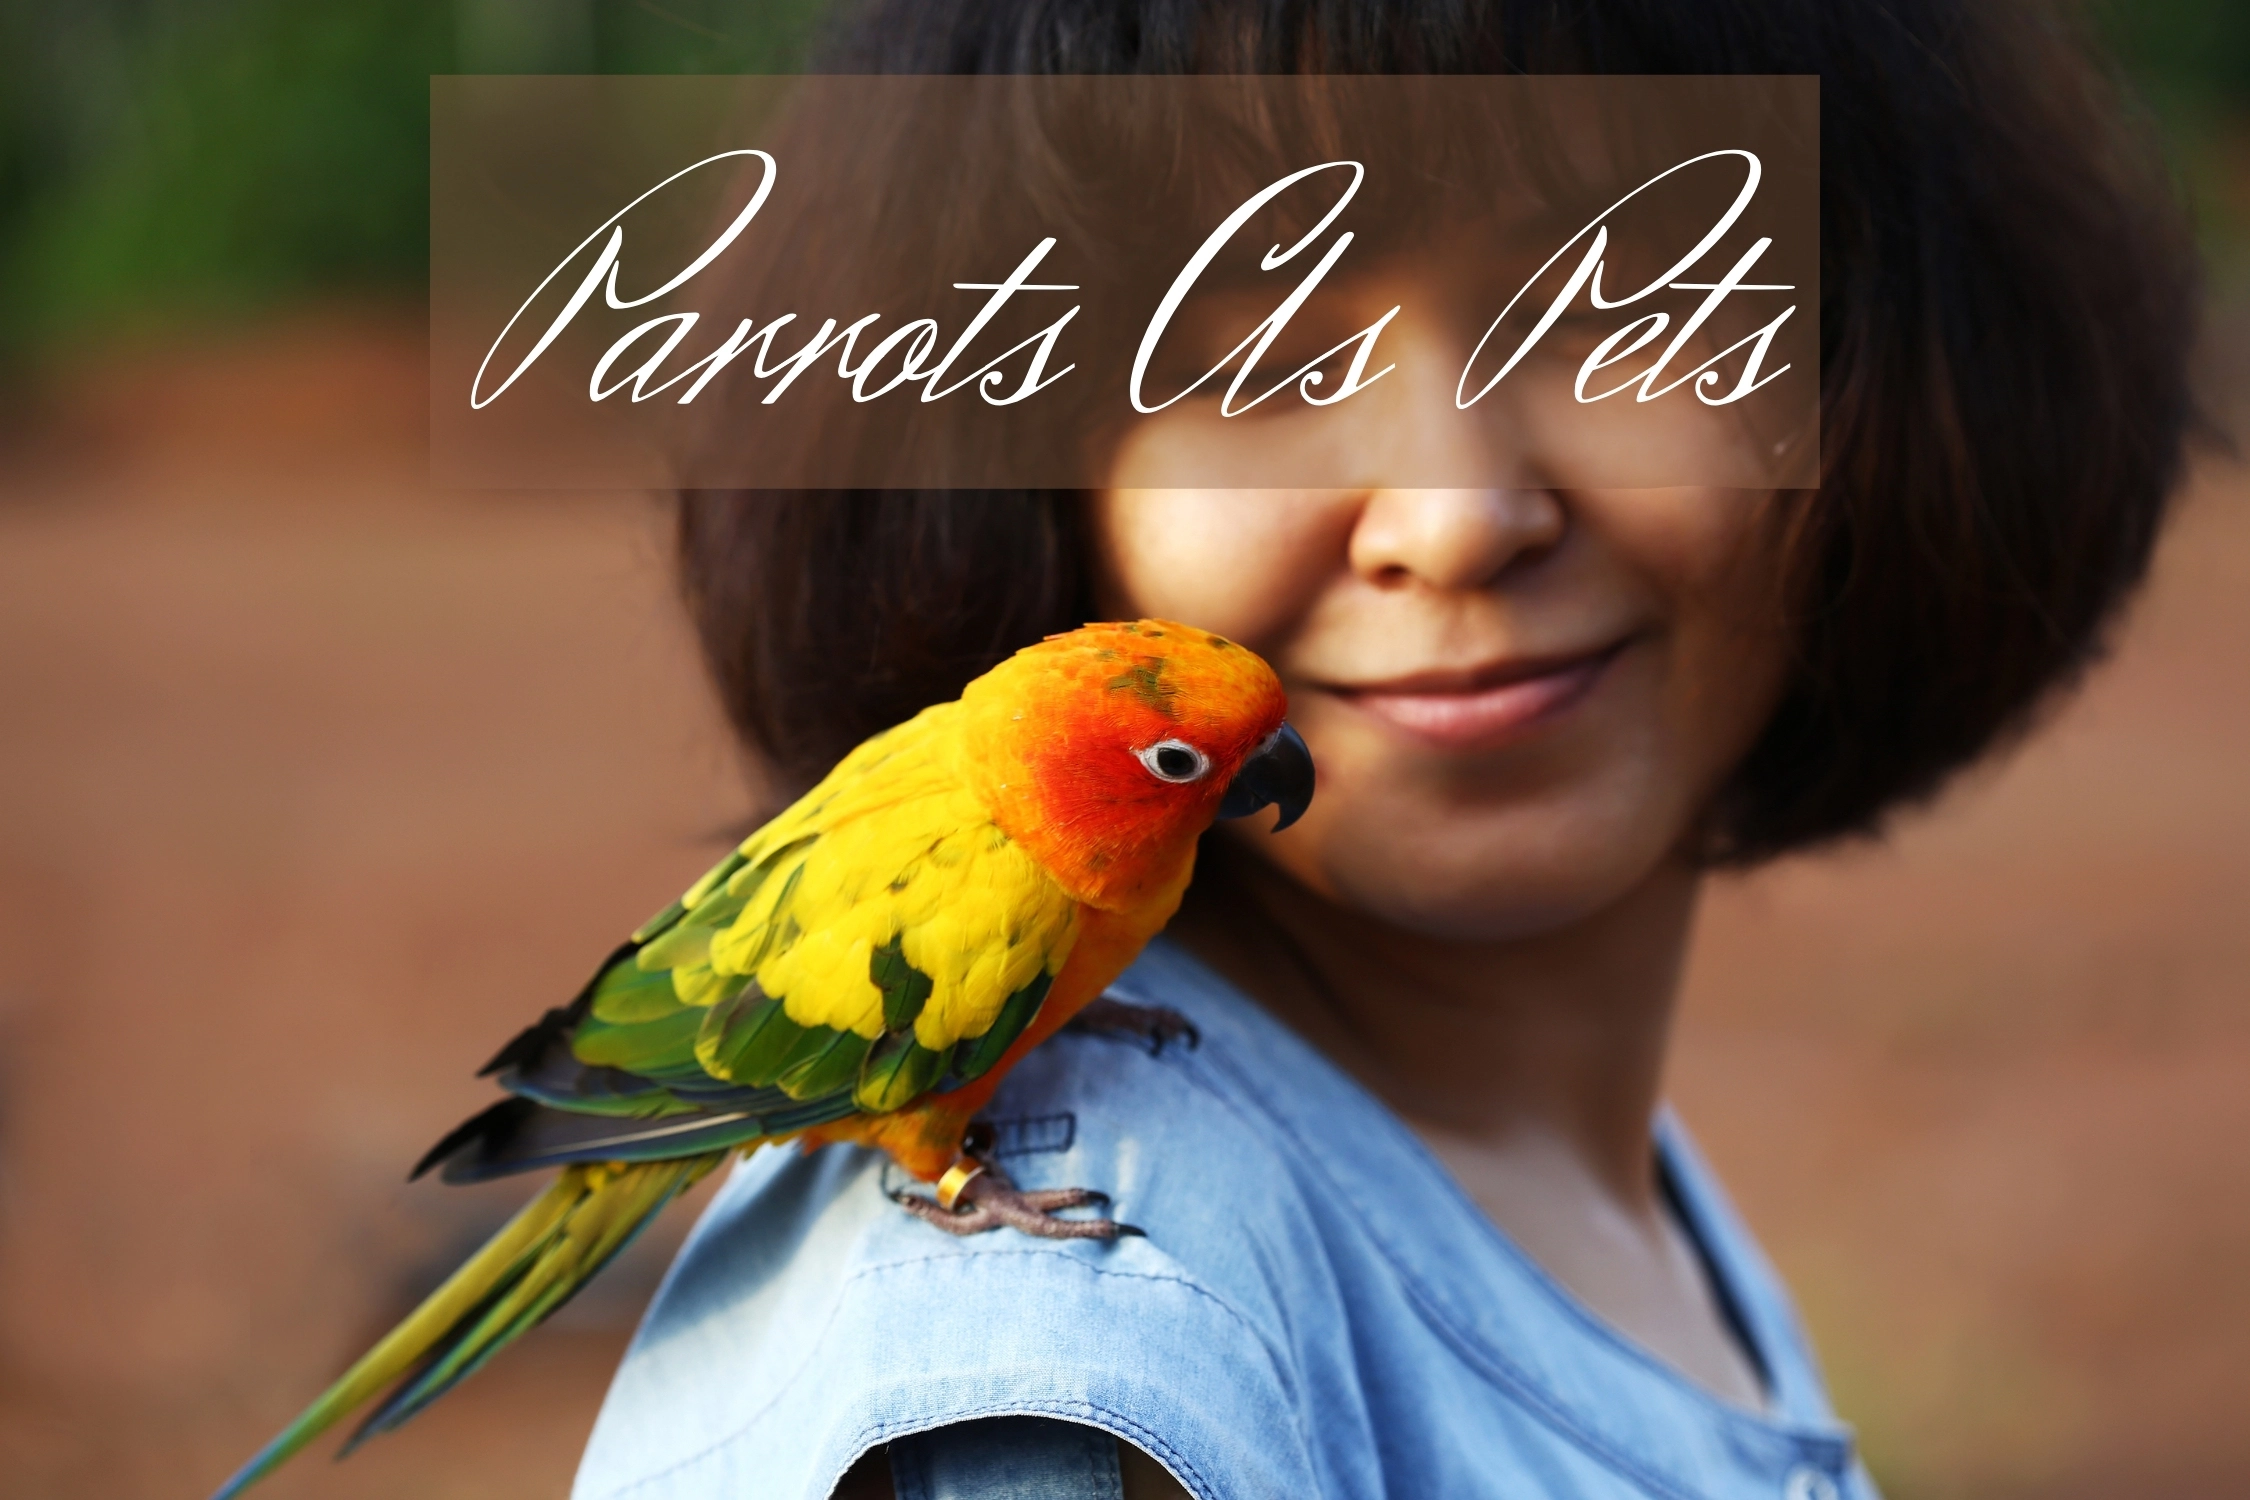 Parrots as Pets